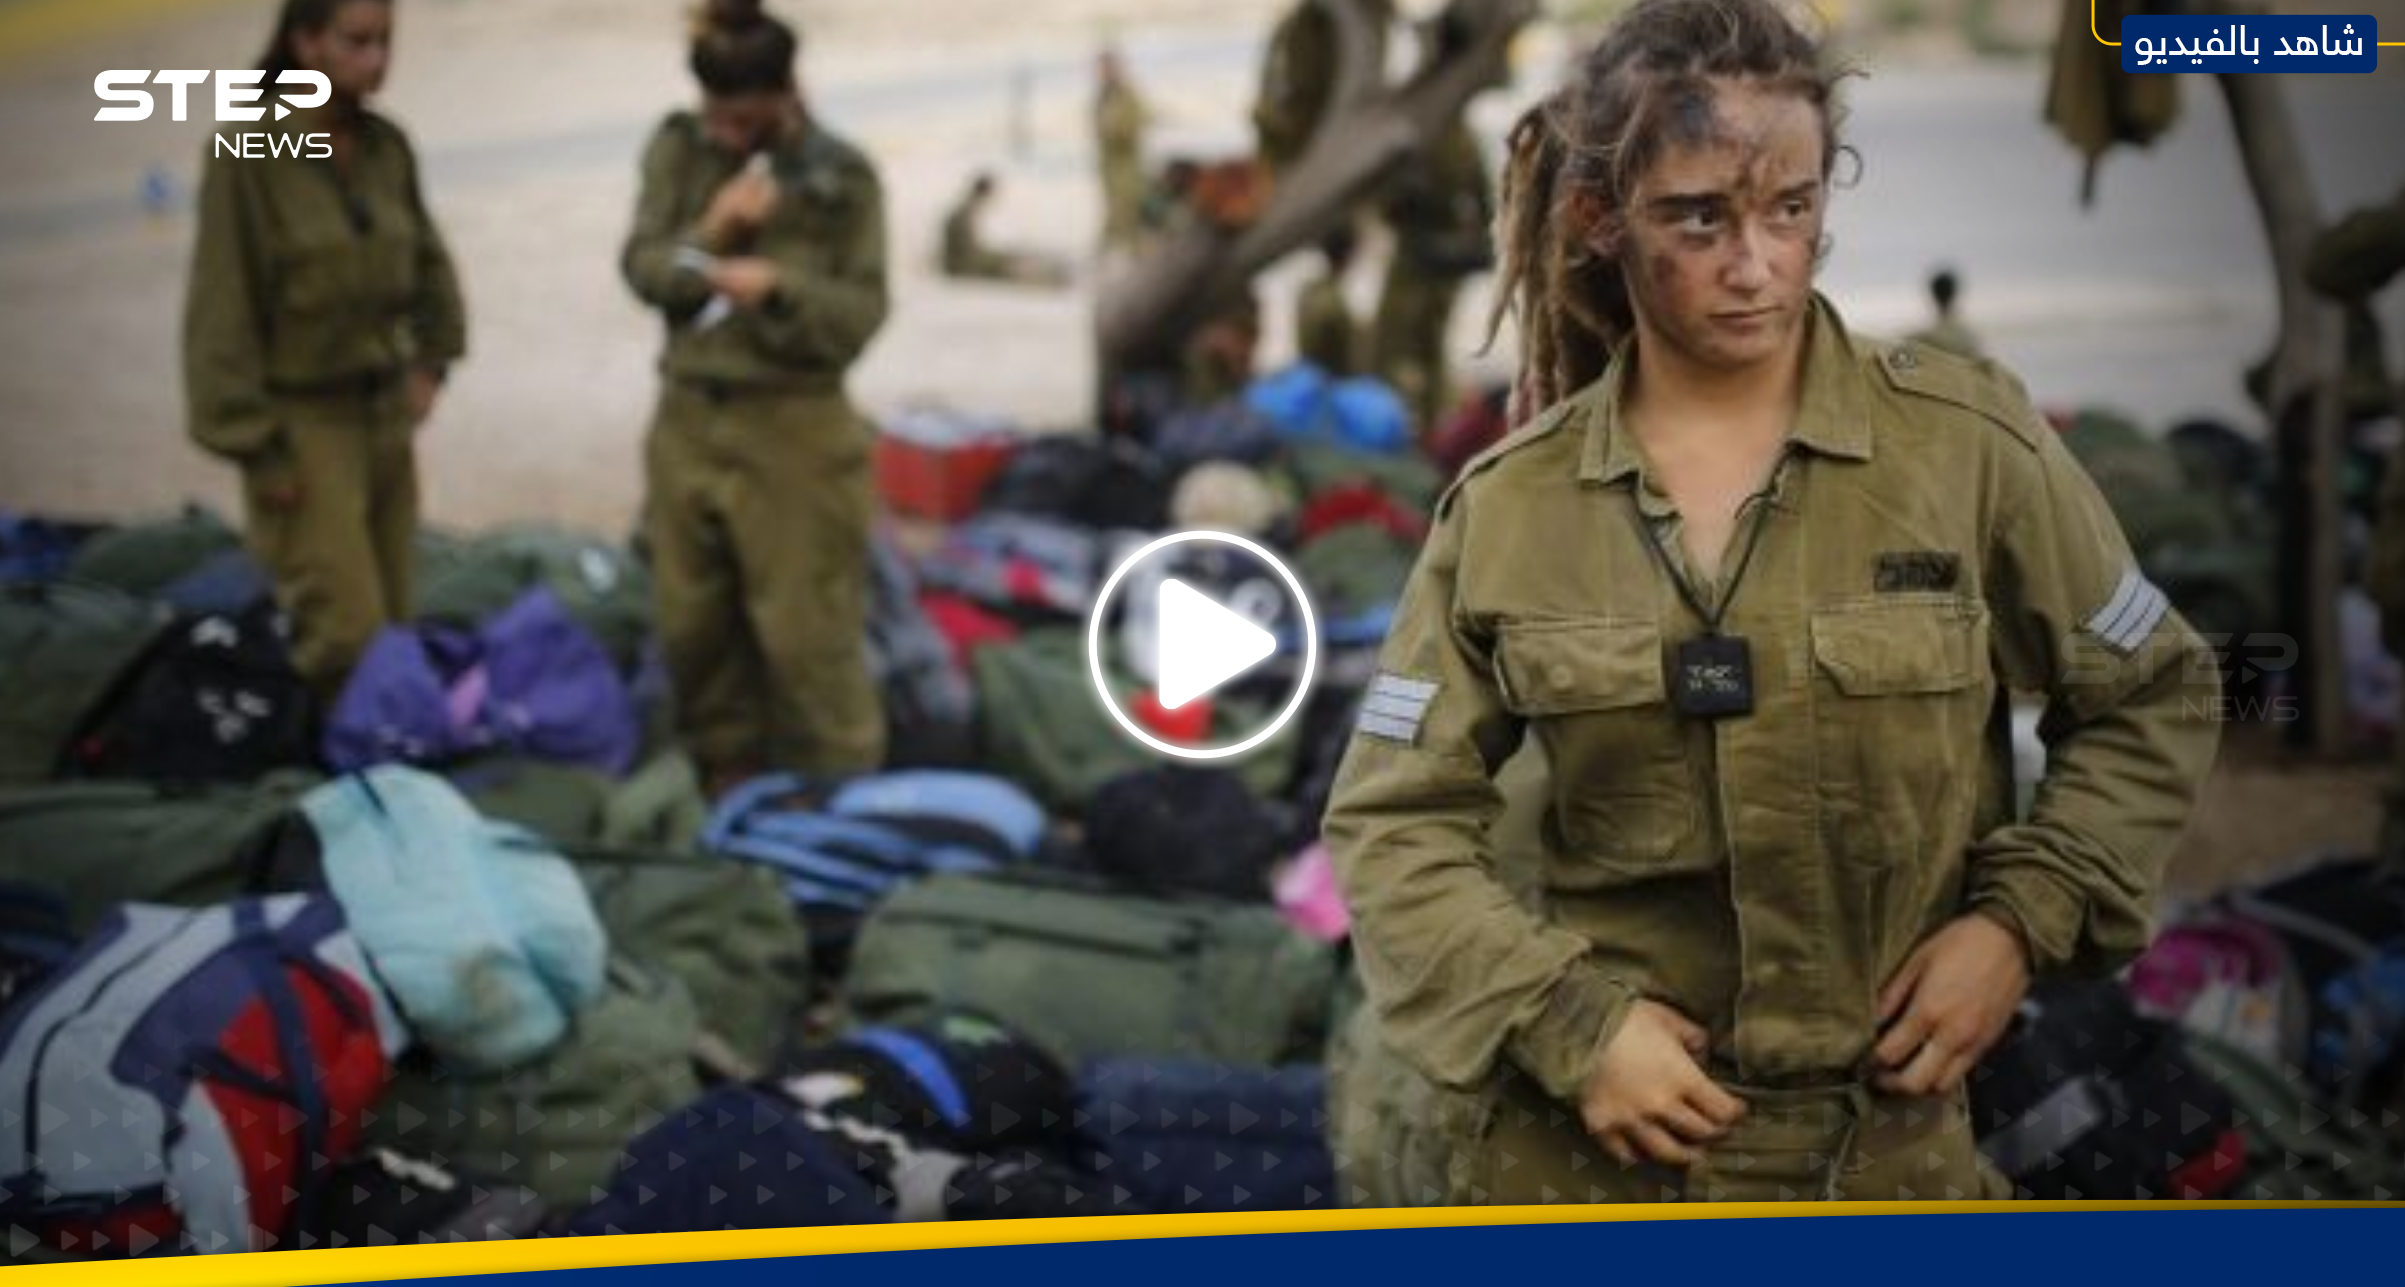 بالفيديو|| ما فعلته جندية إسرائيلية أمام دبابة يثير غضباً وفتح تحقيق بالواقعة